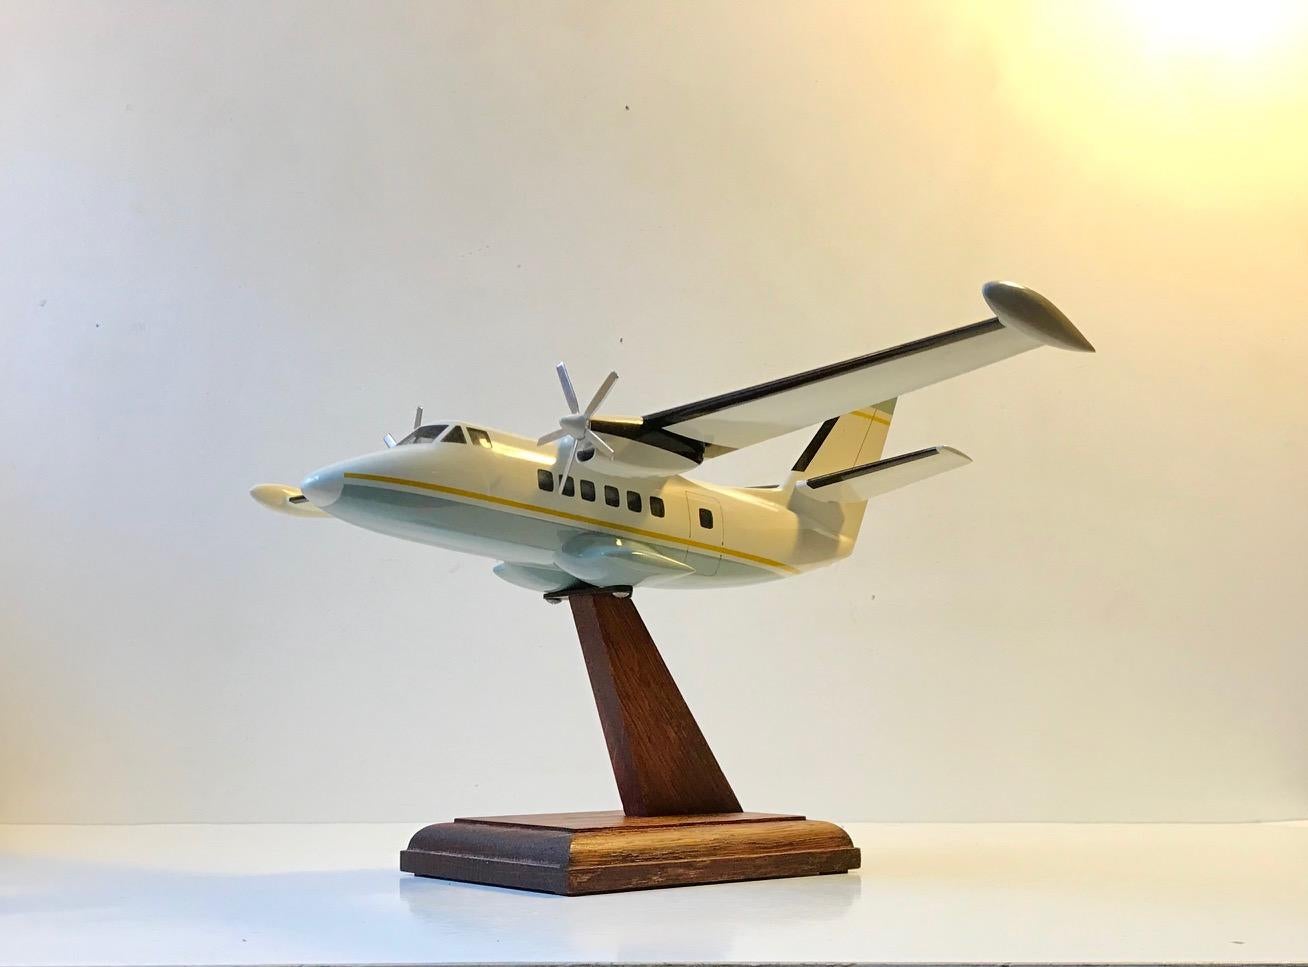 Une maquette de bureau montée bien faite d'un avion/jet privé. Monté professionnellement sur un support en chêne. Fabricant scandinave inconnu, vers 1970-1975. Il est réalisé en acrylique laqué, en fer blanc et en chêne (support).